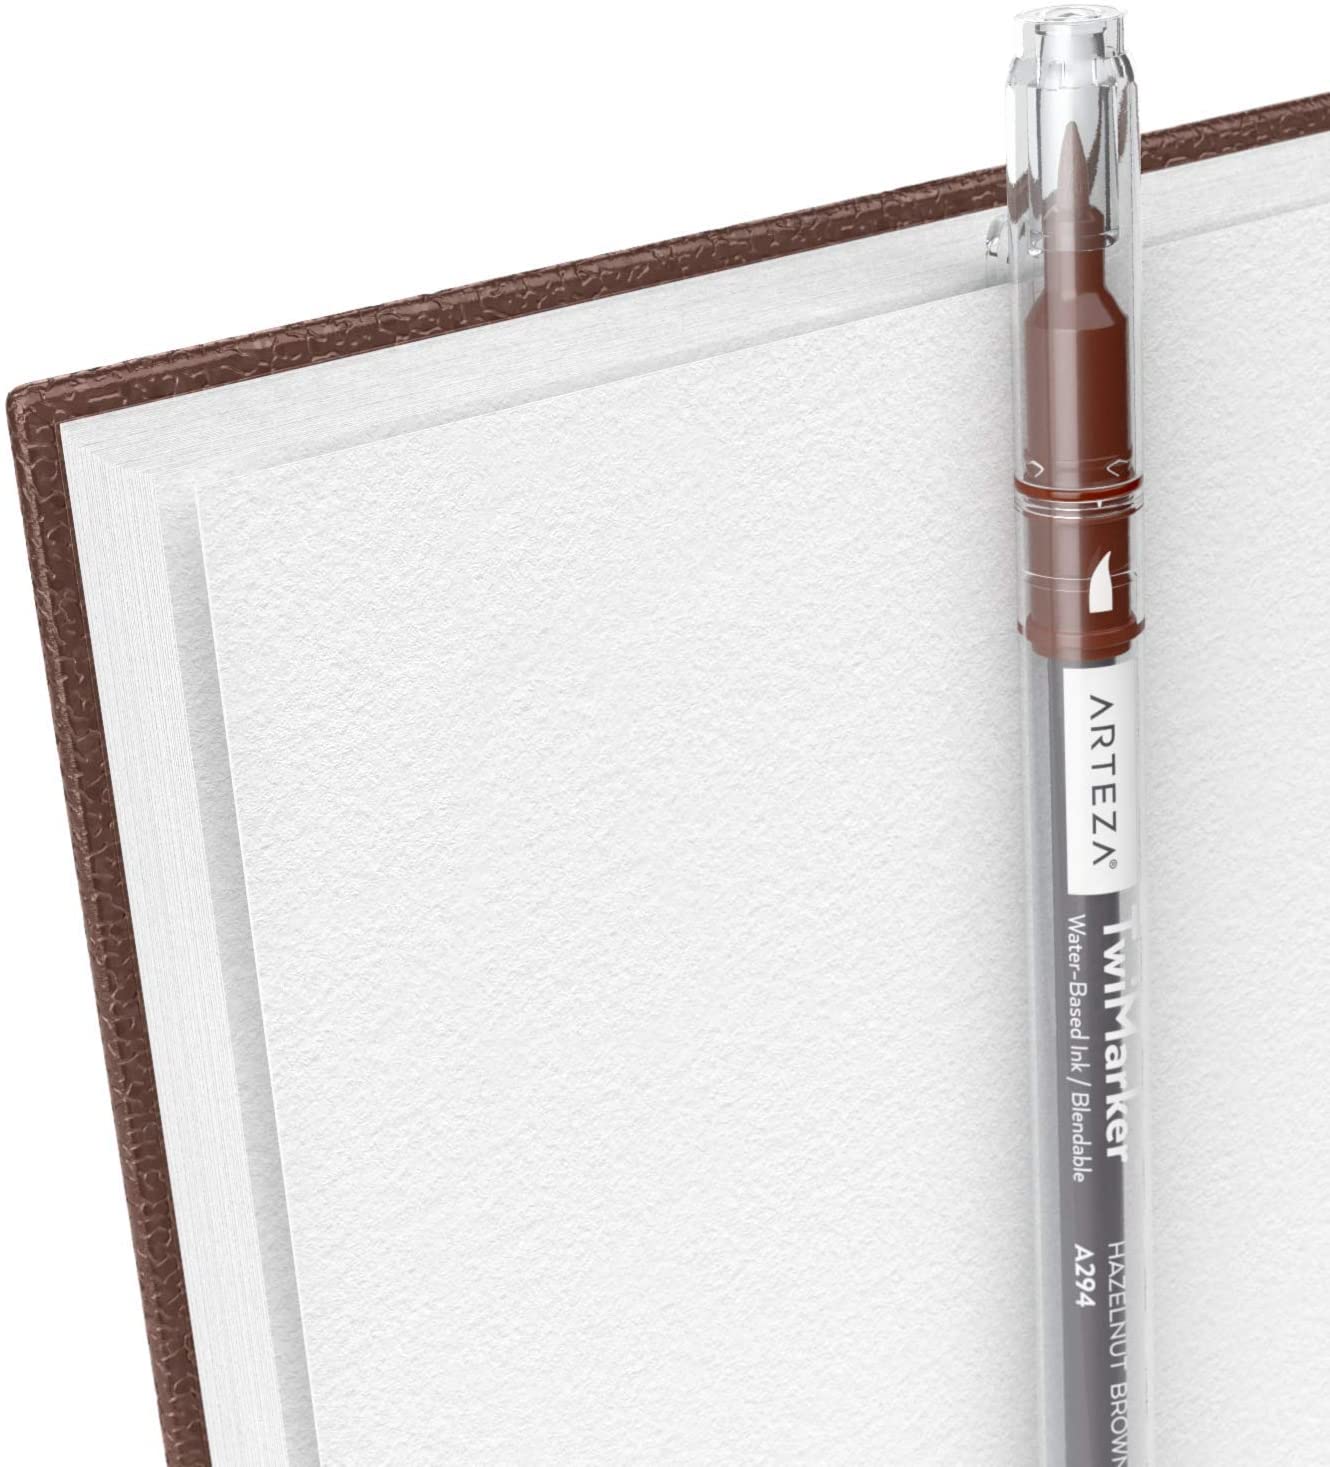 Sketchbook, 5.5 x 8.5, 100 Sheets - Pack of 3